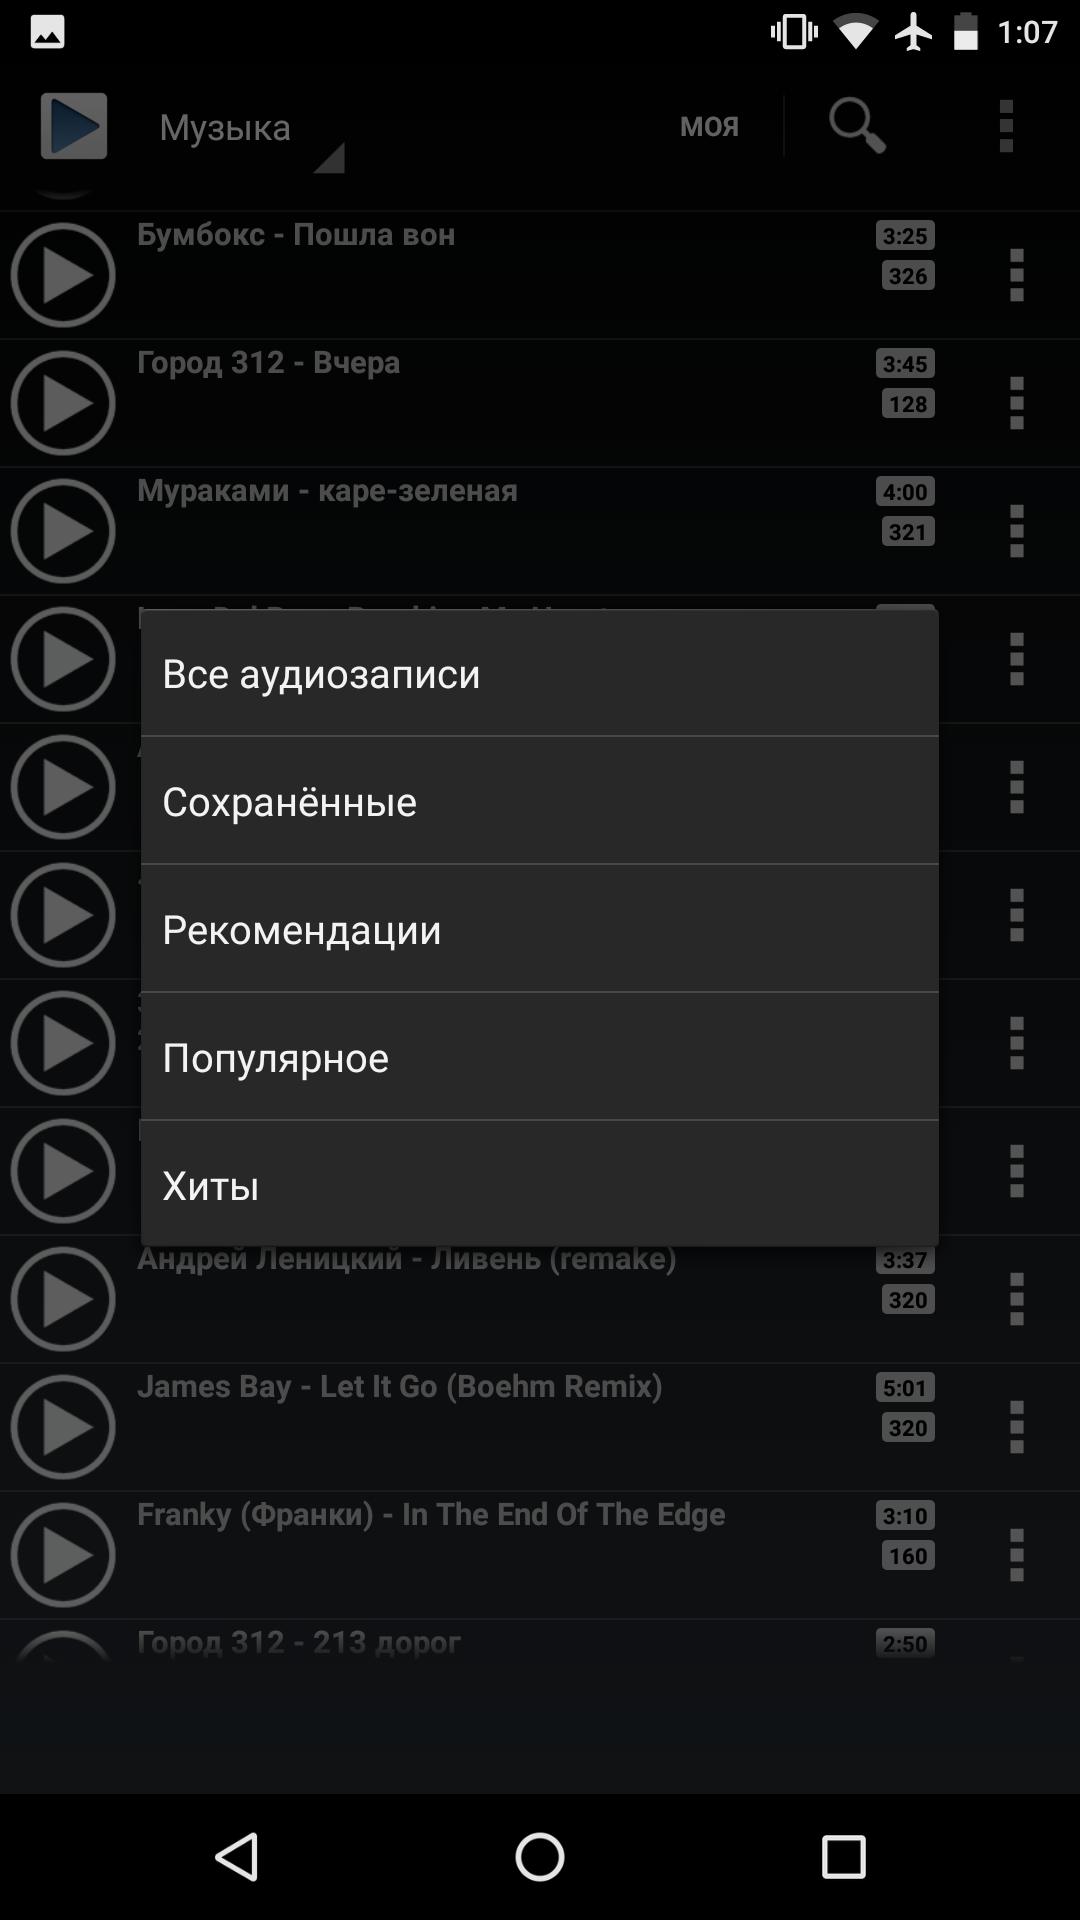 Music vk apk. Приложение для скачивания музыки на андроид. ВК музыка. Музыка из ВК приложение на андроид. Музыка ВКОНТАКТЕ Android.